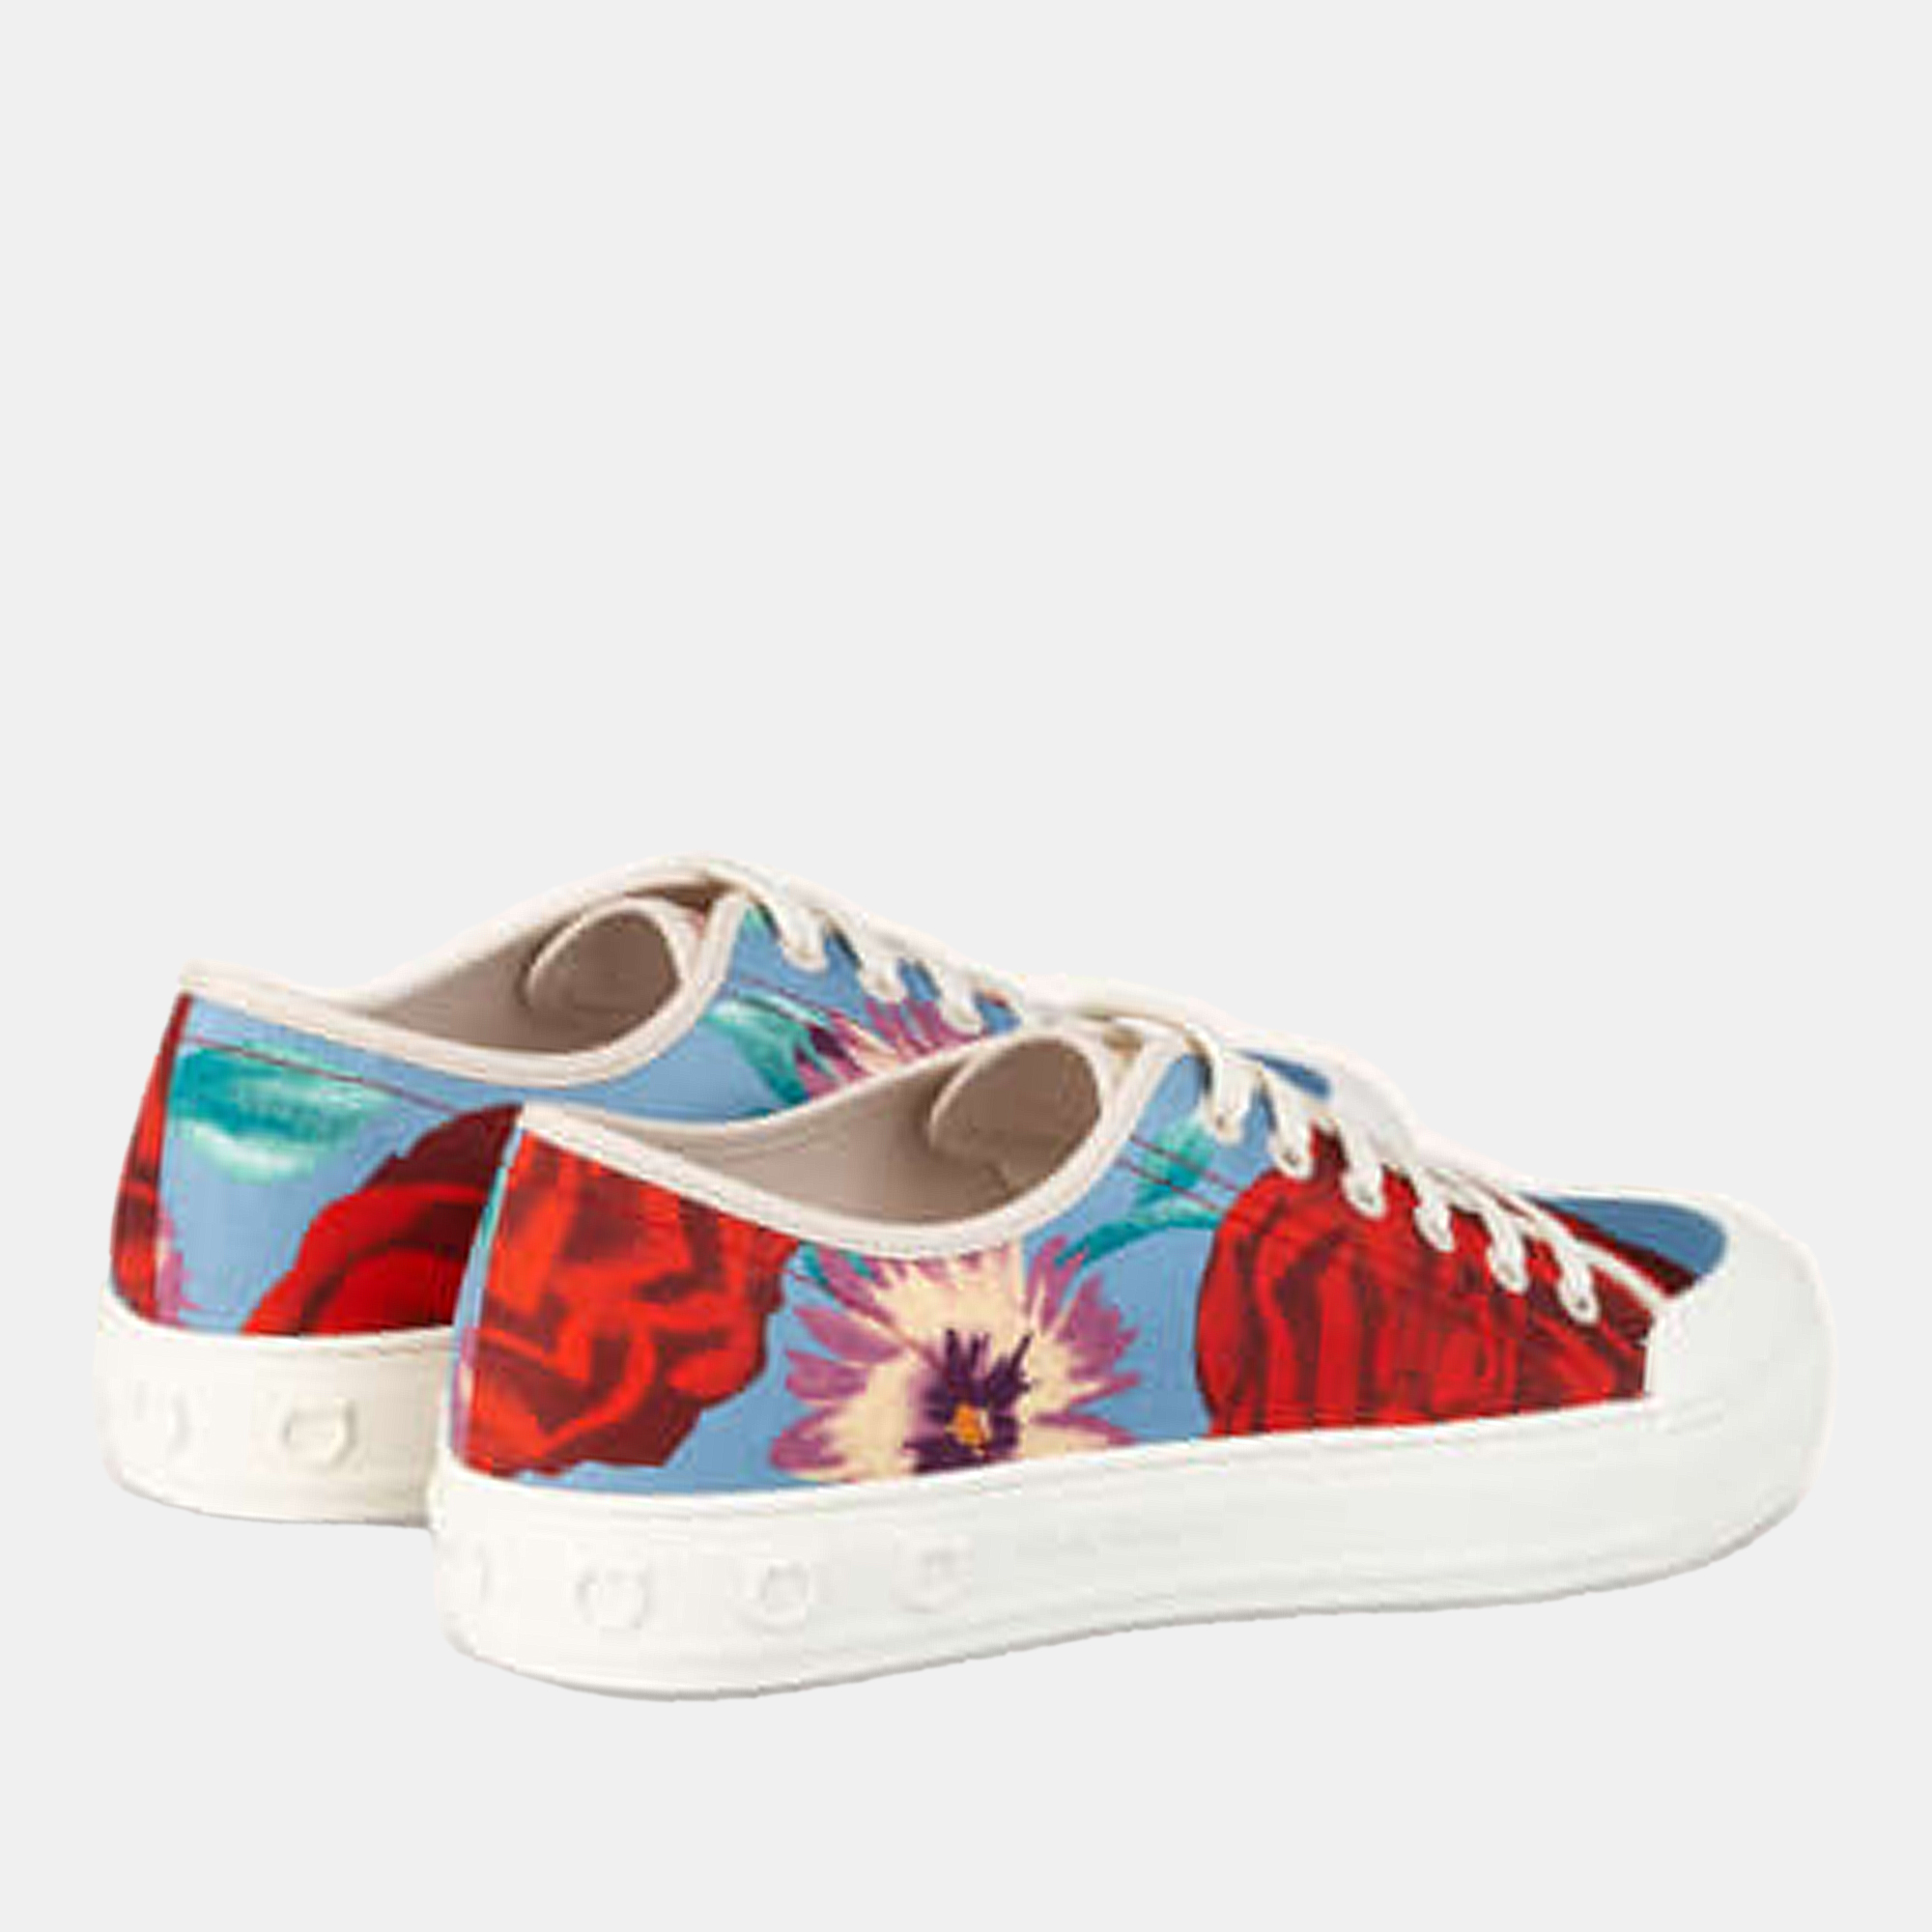 Salvatore Ferragamo Multicolor Floral Printed Sneakers Size 38